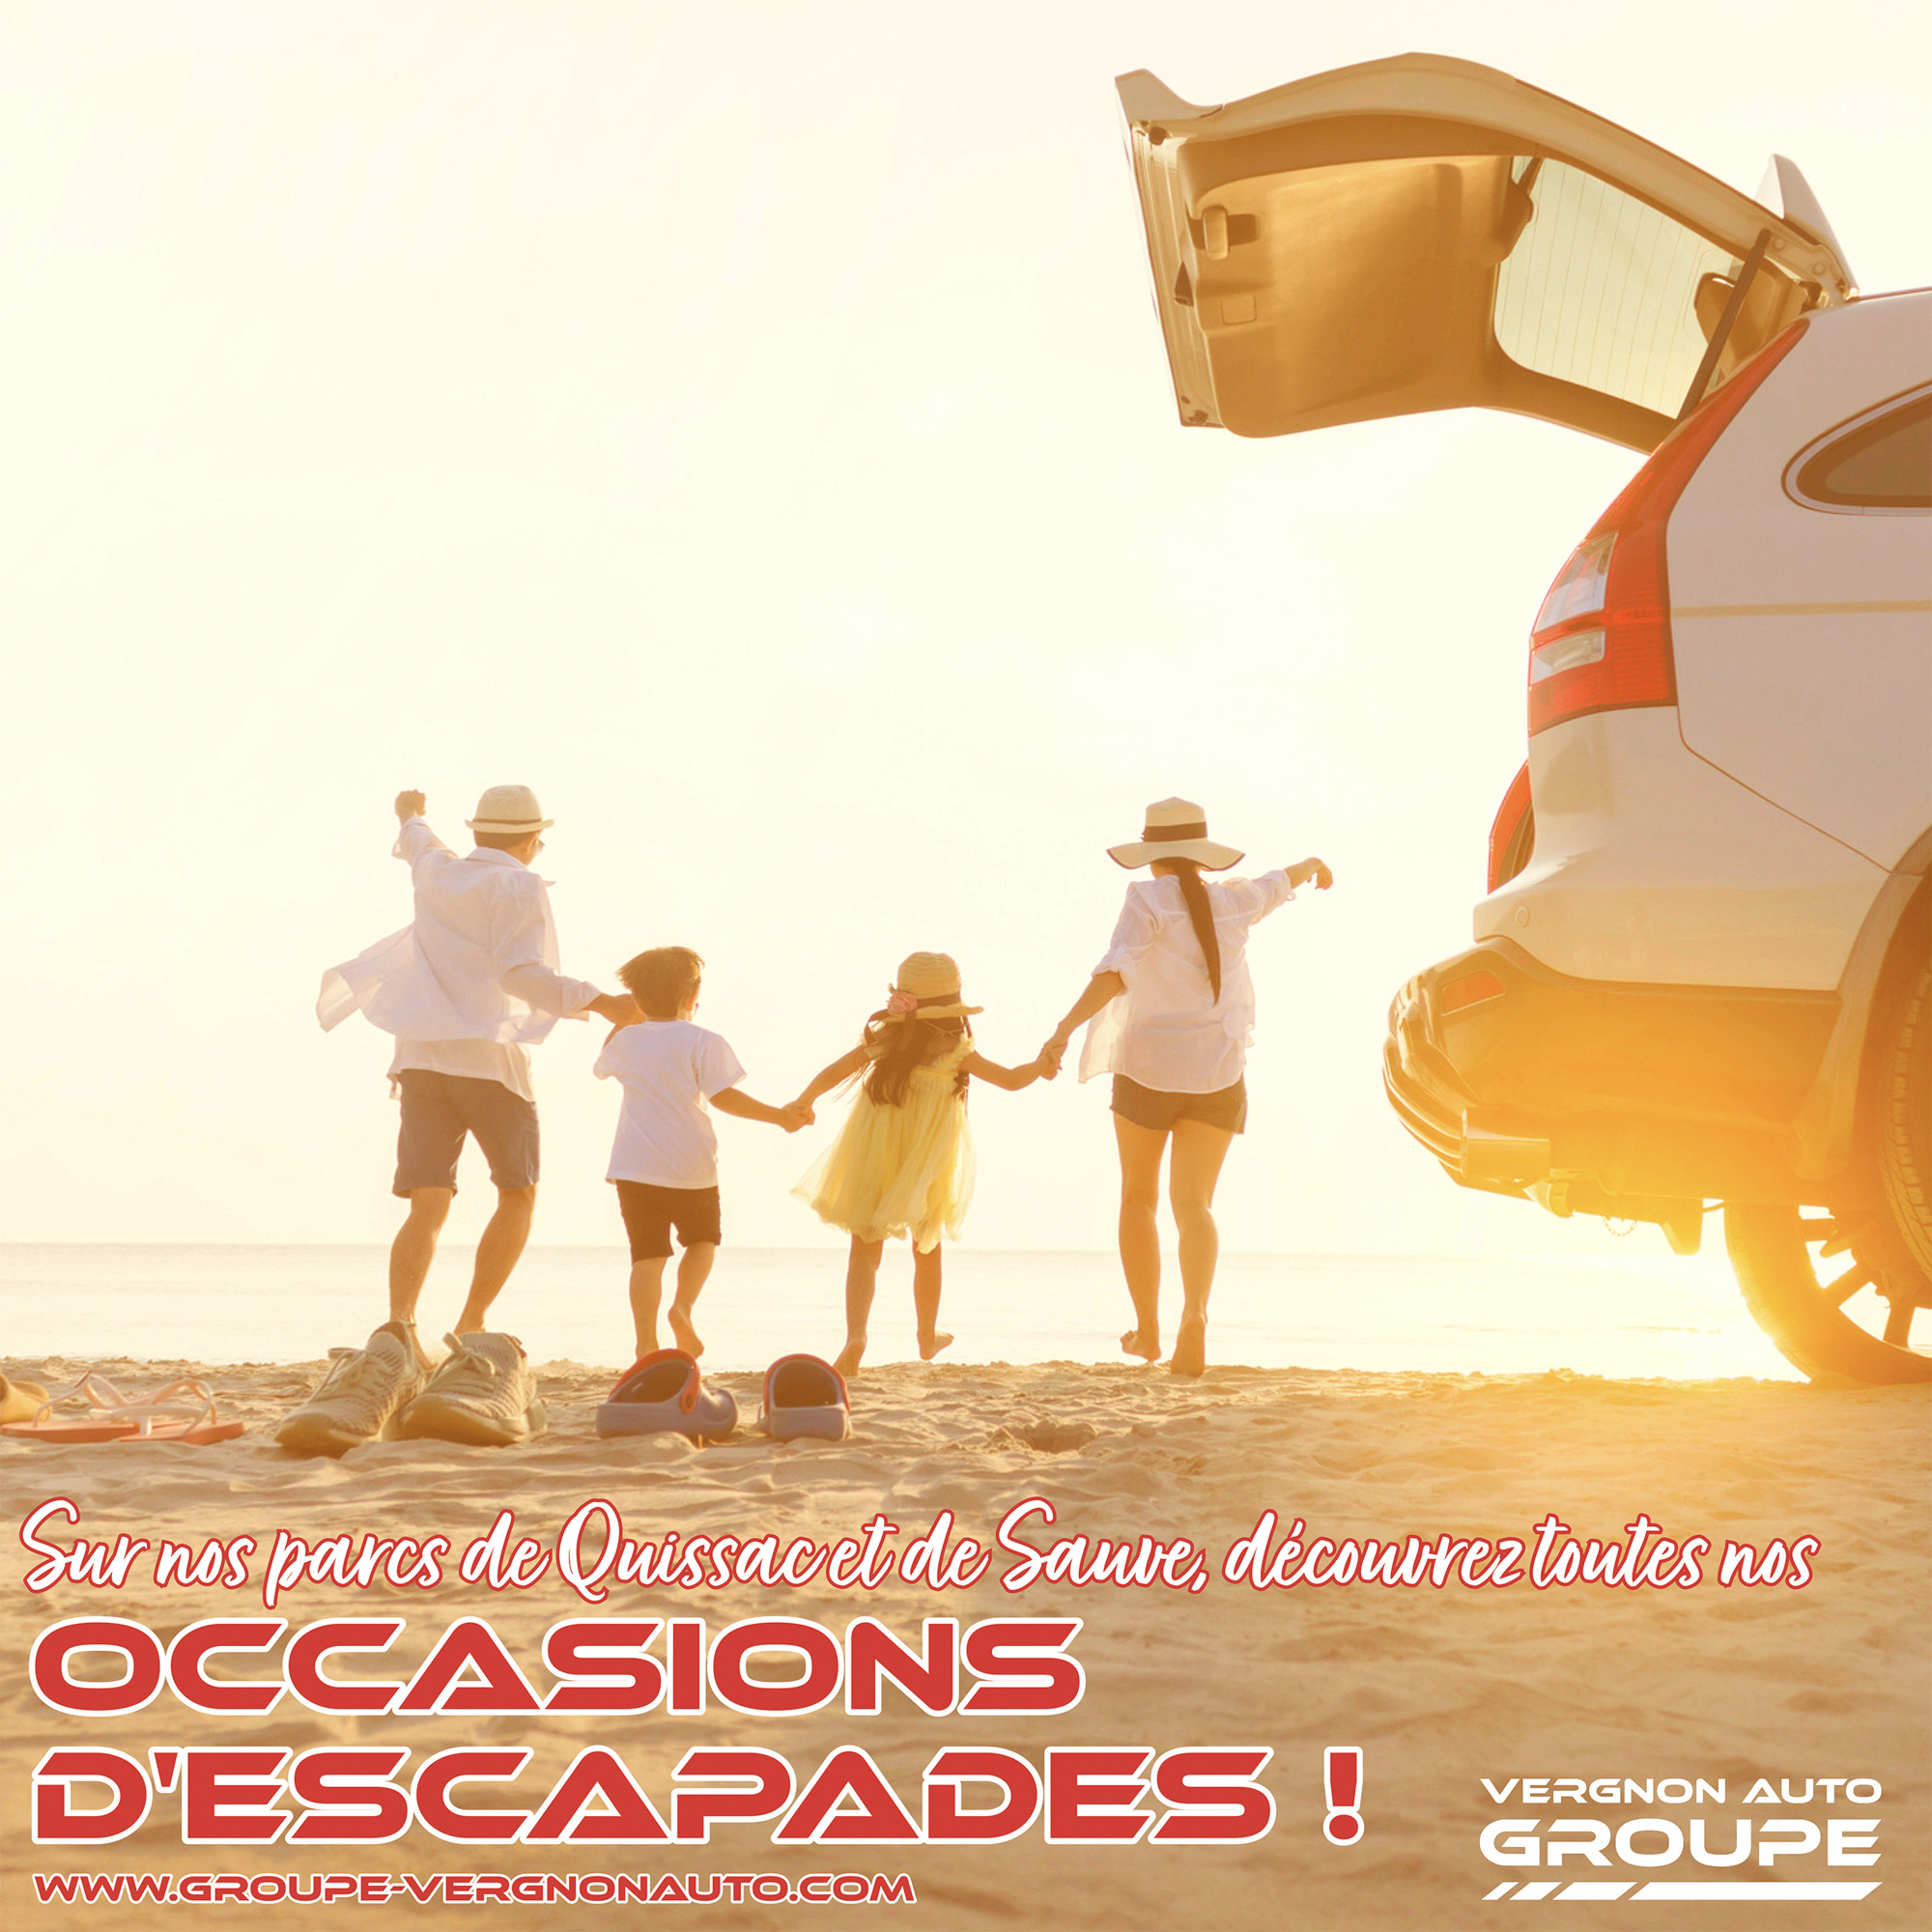 Renault, Dacia, Peugeot, Citroën et d'autres marques au meilleur prix avec notre promo "Occasions d'escapades" !